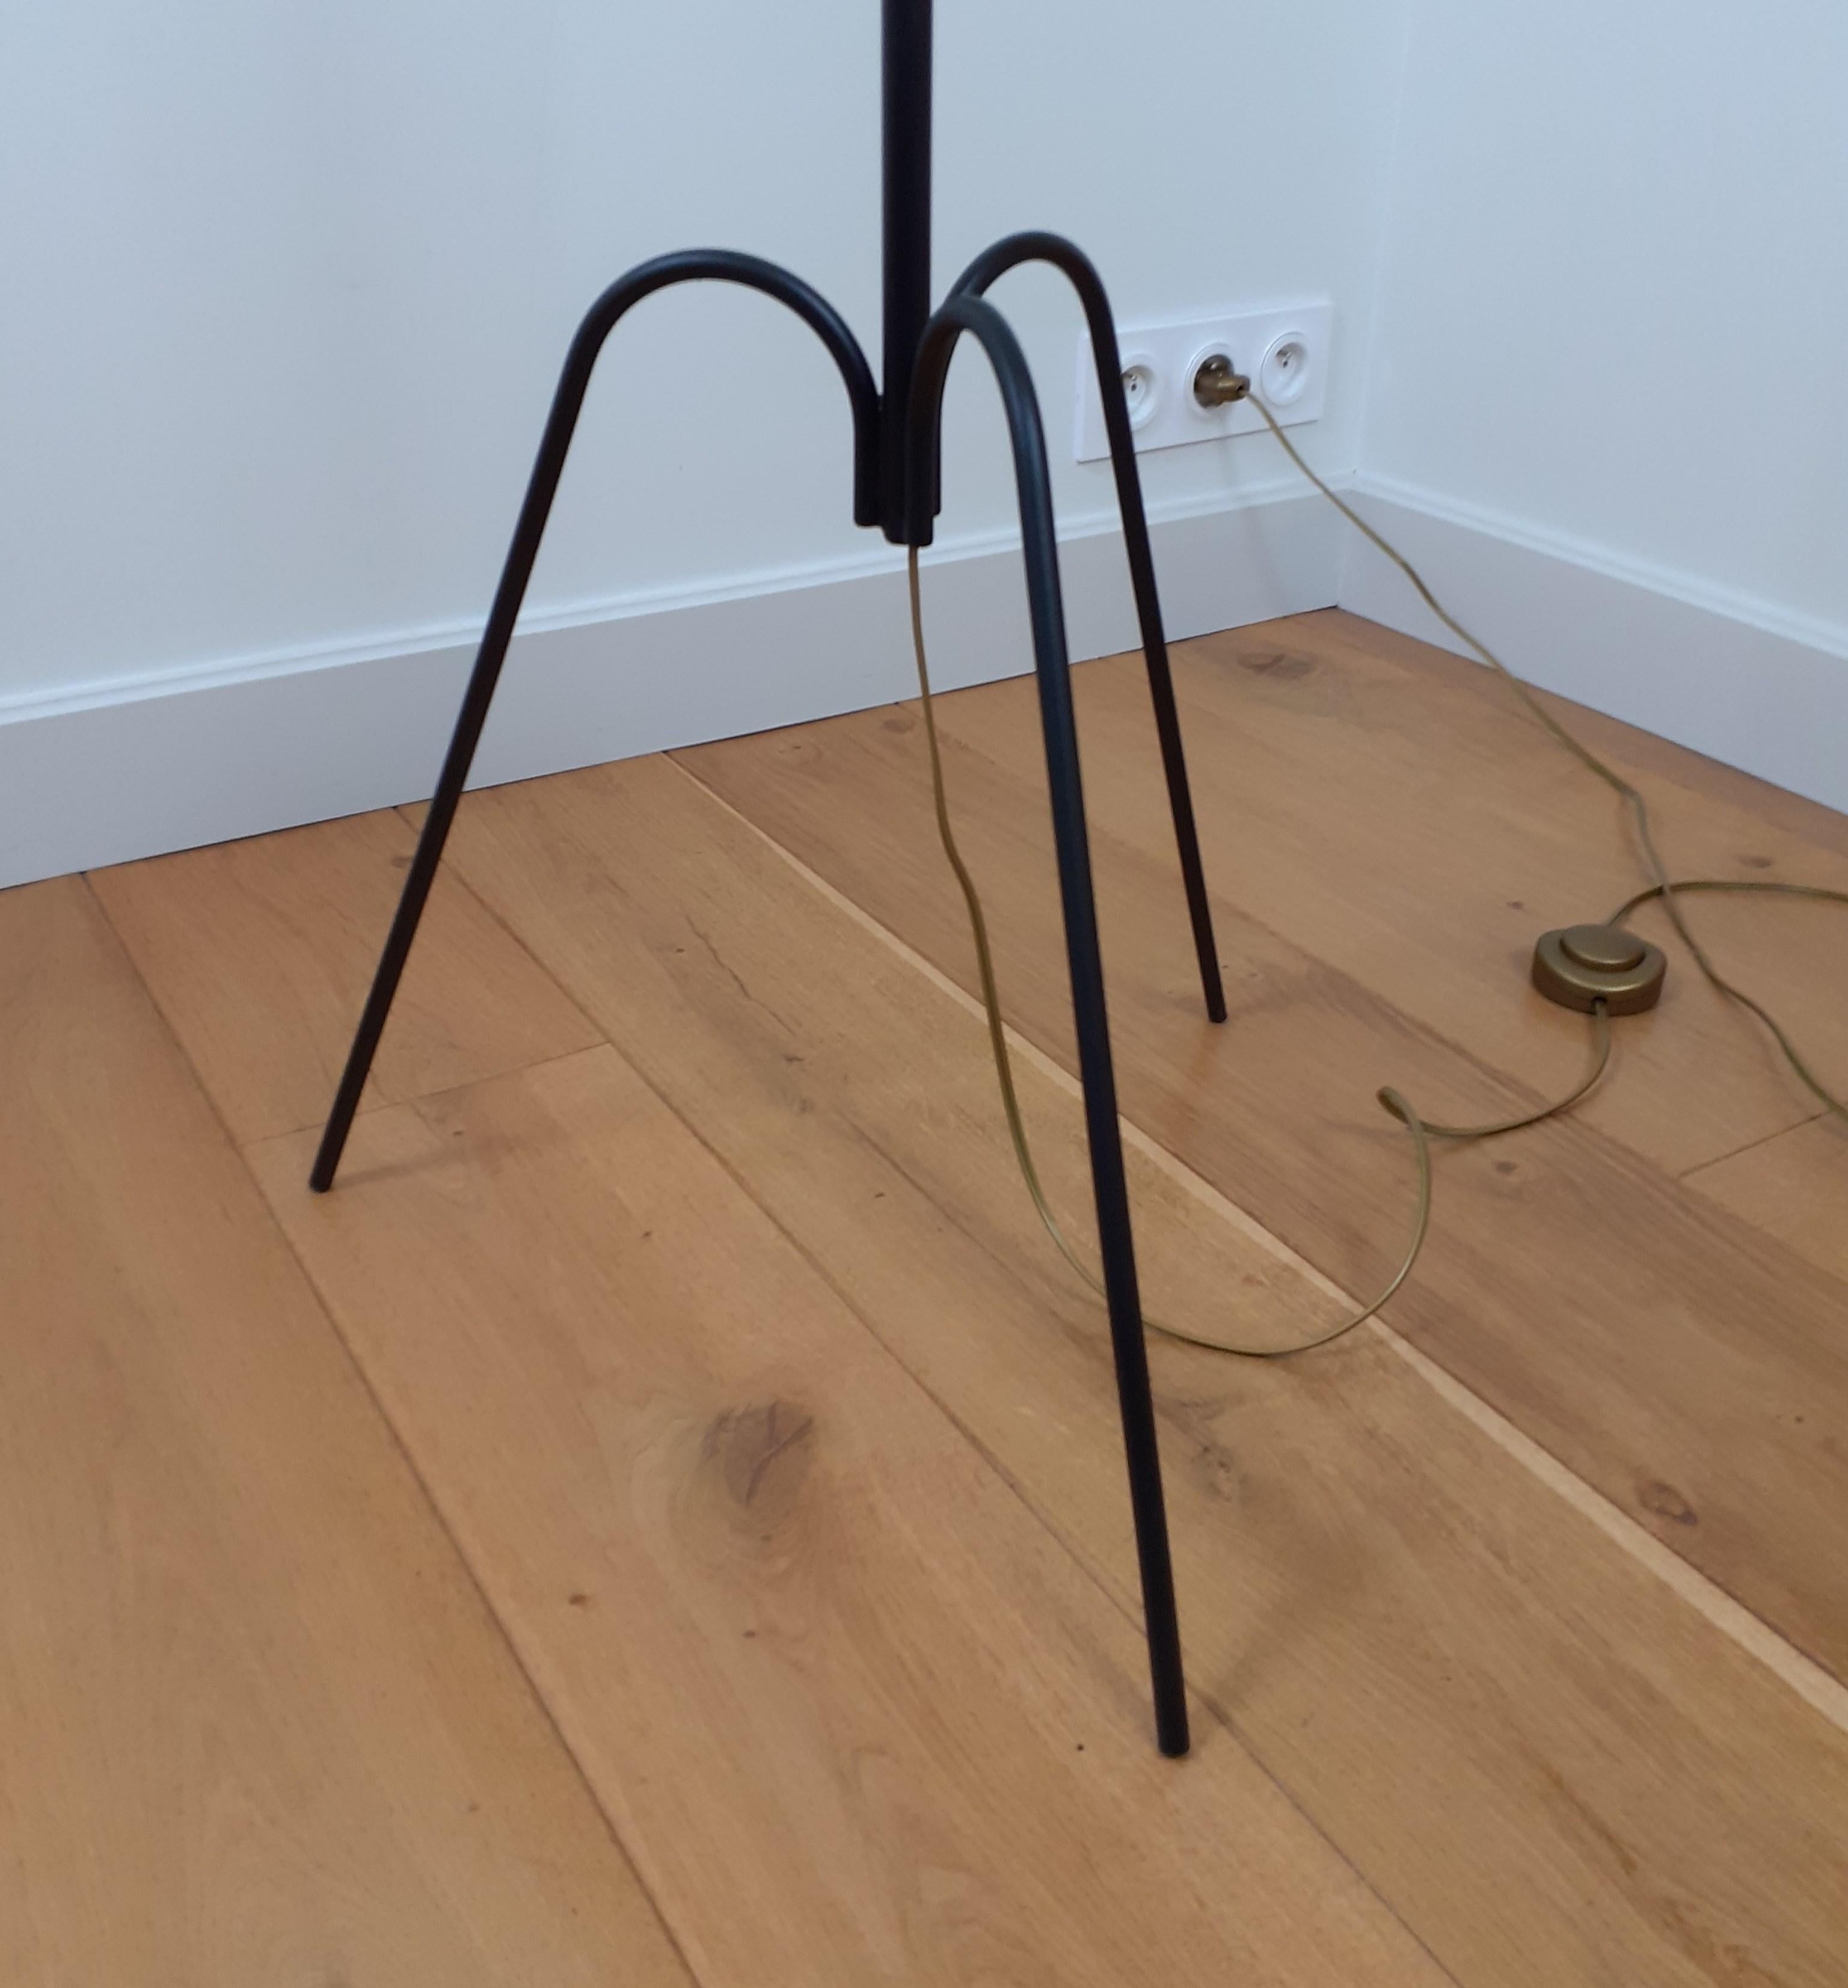 Mid-Century Modern 1950s Pendulum Floor Lamp by Maison Lunel